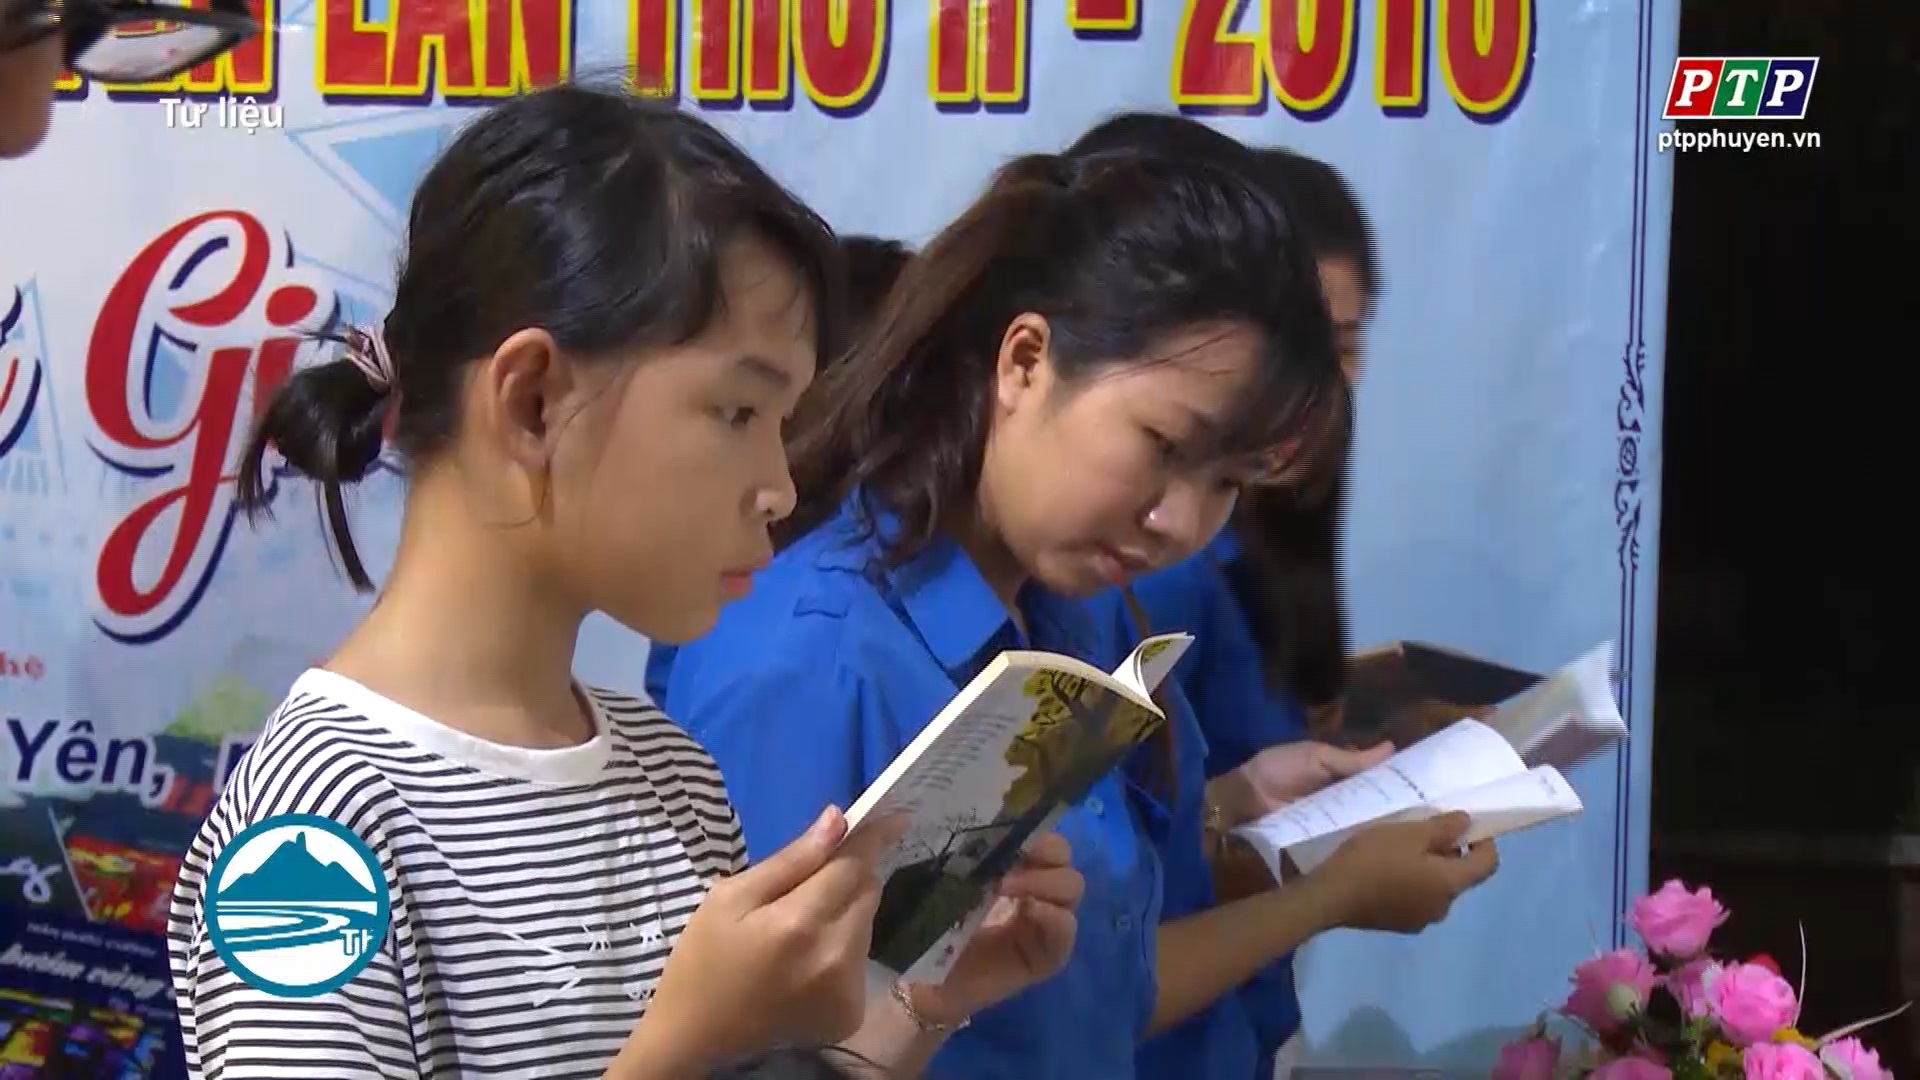 Hội Sách tỉnh Phú Yên lần thứ III-2019: Chủ đề “Sách - Tri thức, Phát triển và Hội nhập”